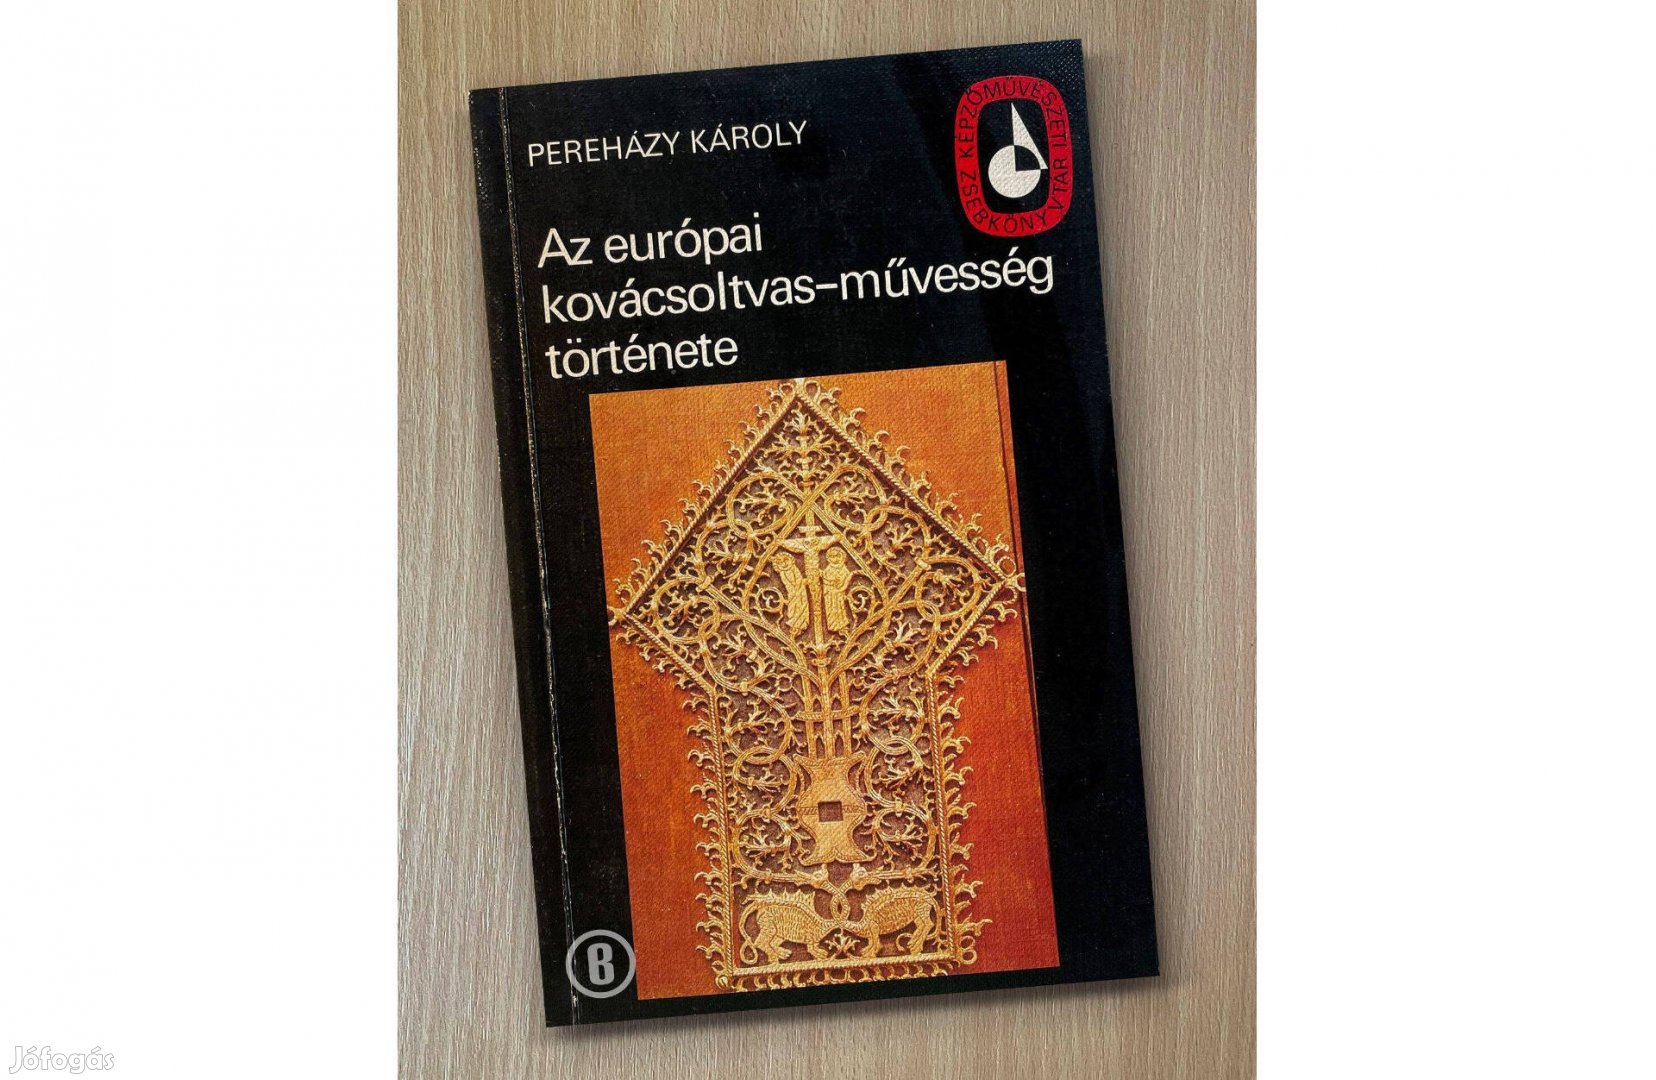 Pereházy Károly: Az európai kovácsoltvas-művesség története